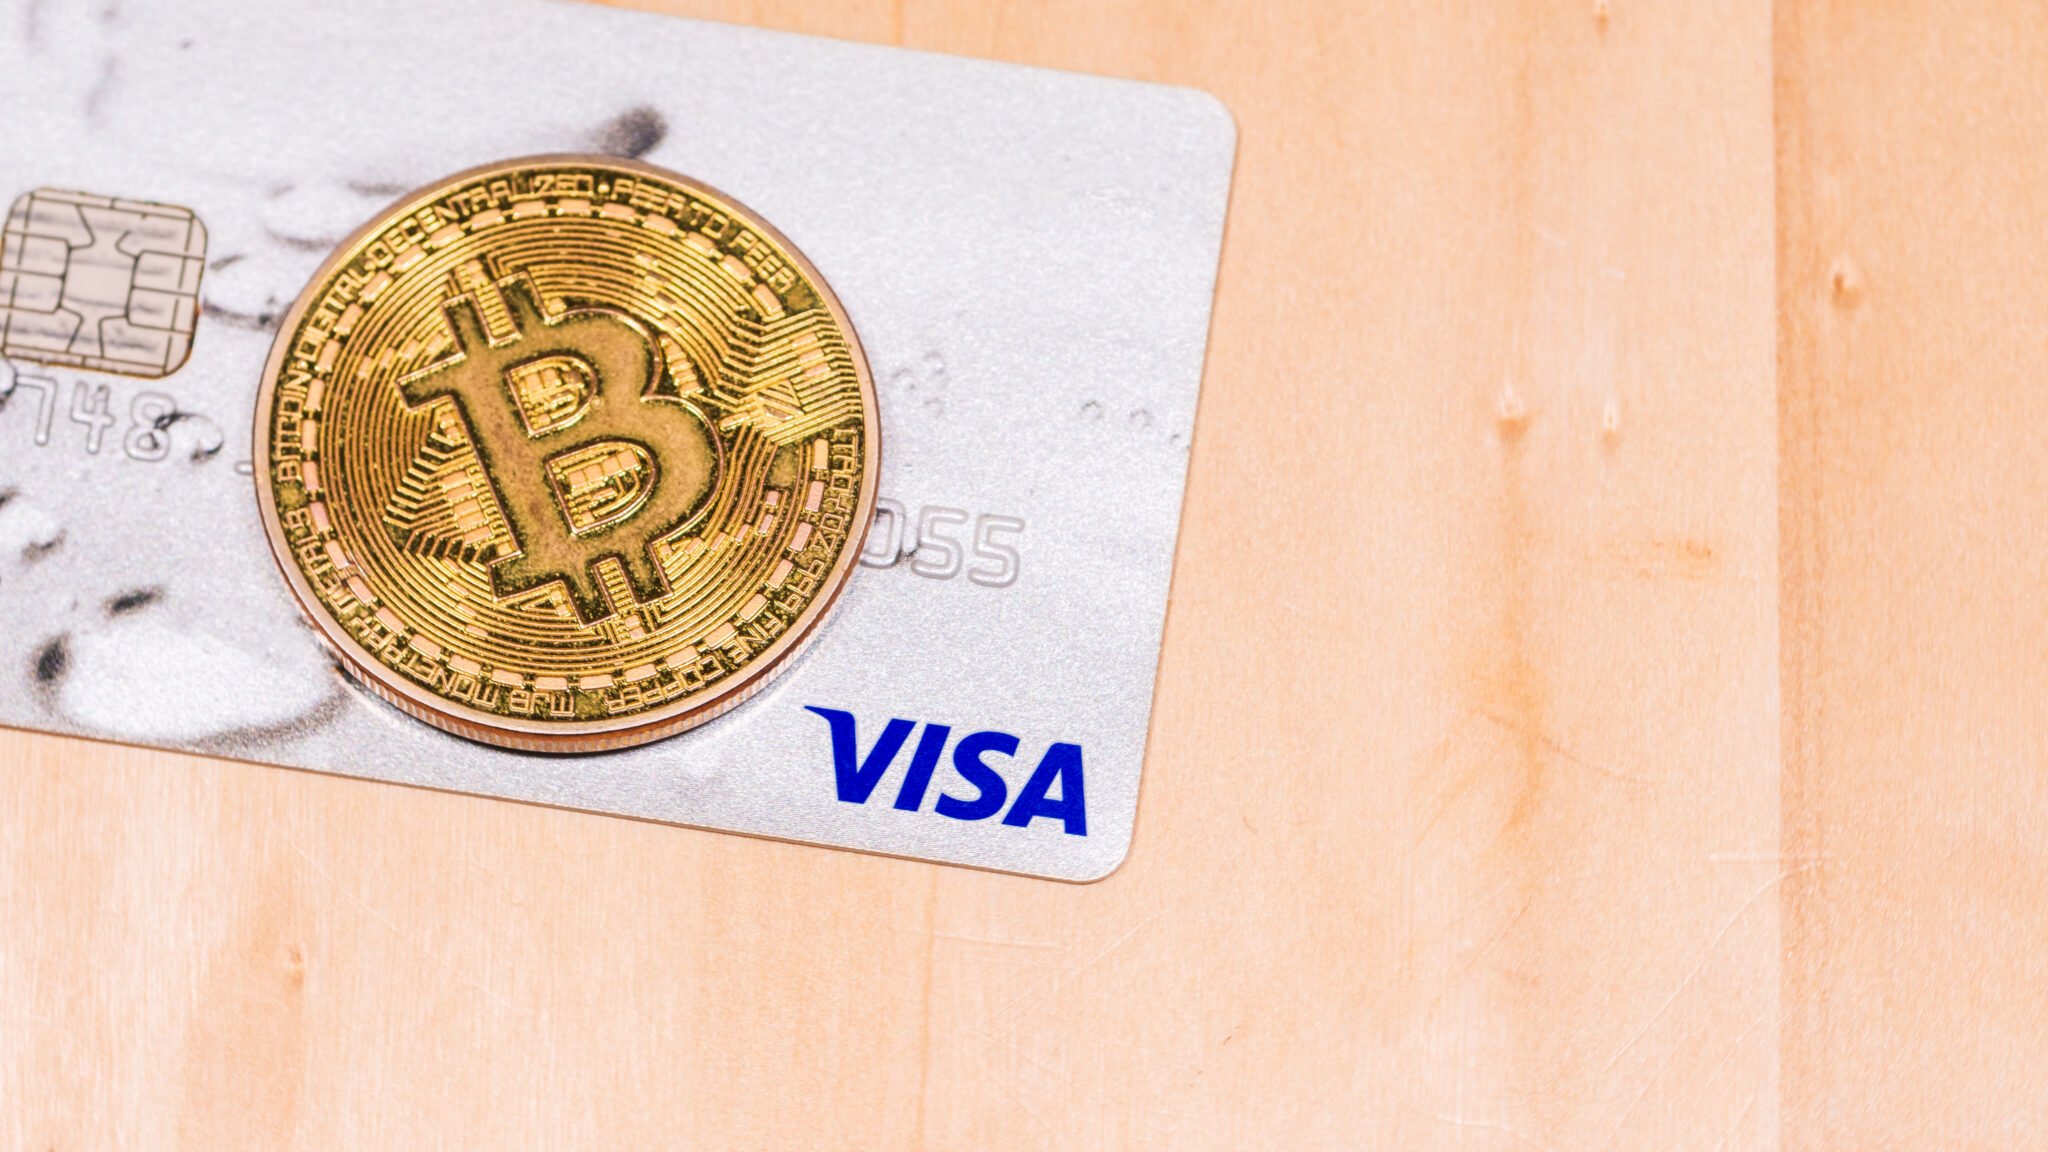 Bitcoin and Visa Credit Card